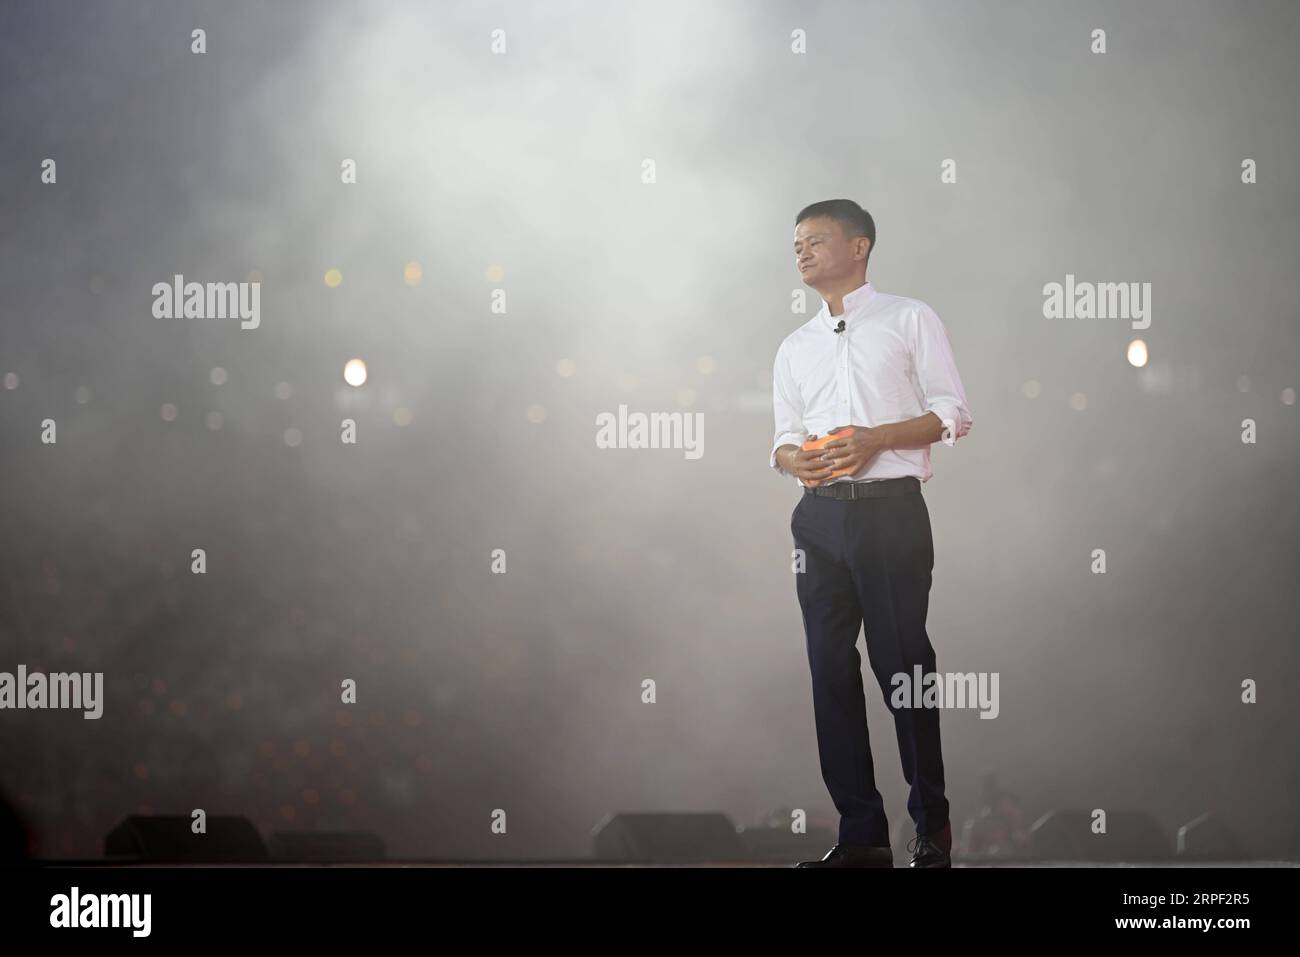 (190911) -- HANGZHOU, 11. September 2019 -- Jack Ma hält eine Rede bei einer Veranstaltung anlässlich des 20. Jahrestages der Alibaba-Gruppe in Hangzhou, Hauptstadt der ostchinesischen Provinz Zhejiang, 10. September 2019. Jack Ma trat offiziell als Group Chairman von Alibaba Tuesday zurück und übergab die Position an den CEO Daniel Zhang. Es ist ein besonderer Tag sowohl für den chinesischen Milliardär als auch für den E-Commerce-Giganten, den er mitbegründet hat. MA, eine ehemalige Englischlehrerin, wird am Dienstag 55, was auch den 20. Jahrestag der Alibaba Group und den Tag der Lehrer markierte. MA übergab die Position des CEO 2013 und mA Stockfoto